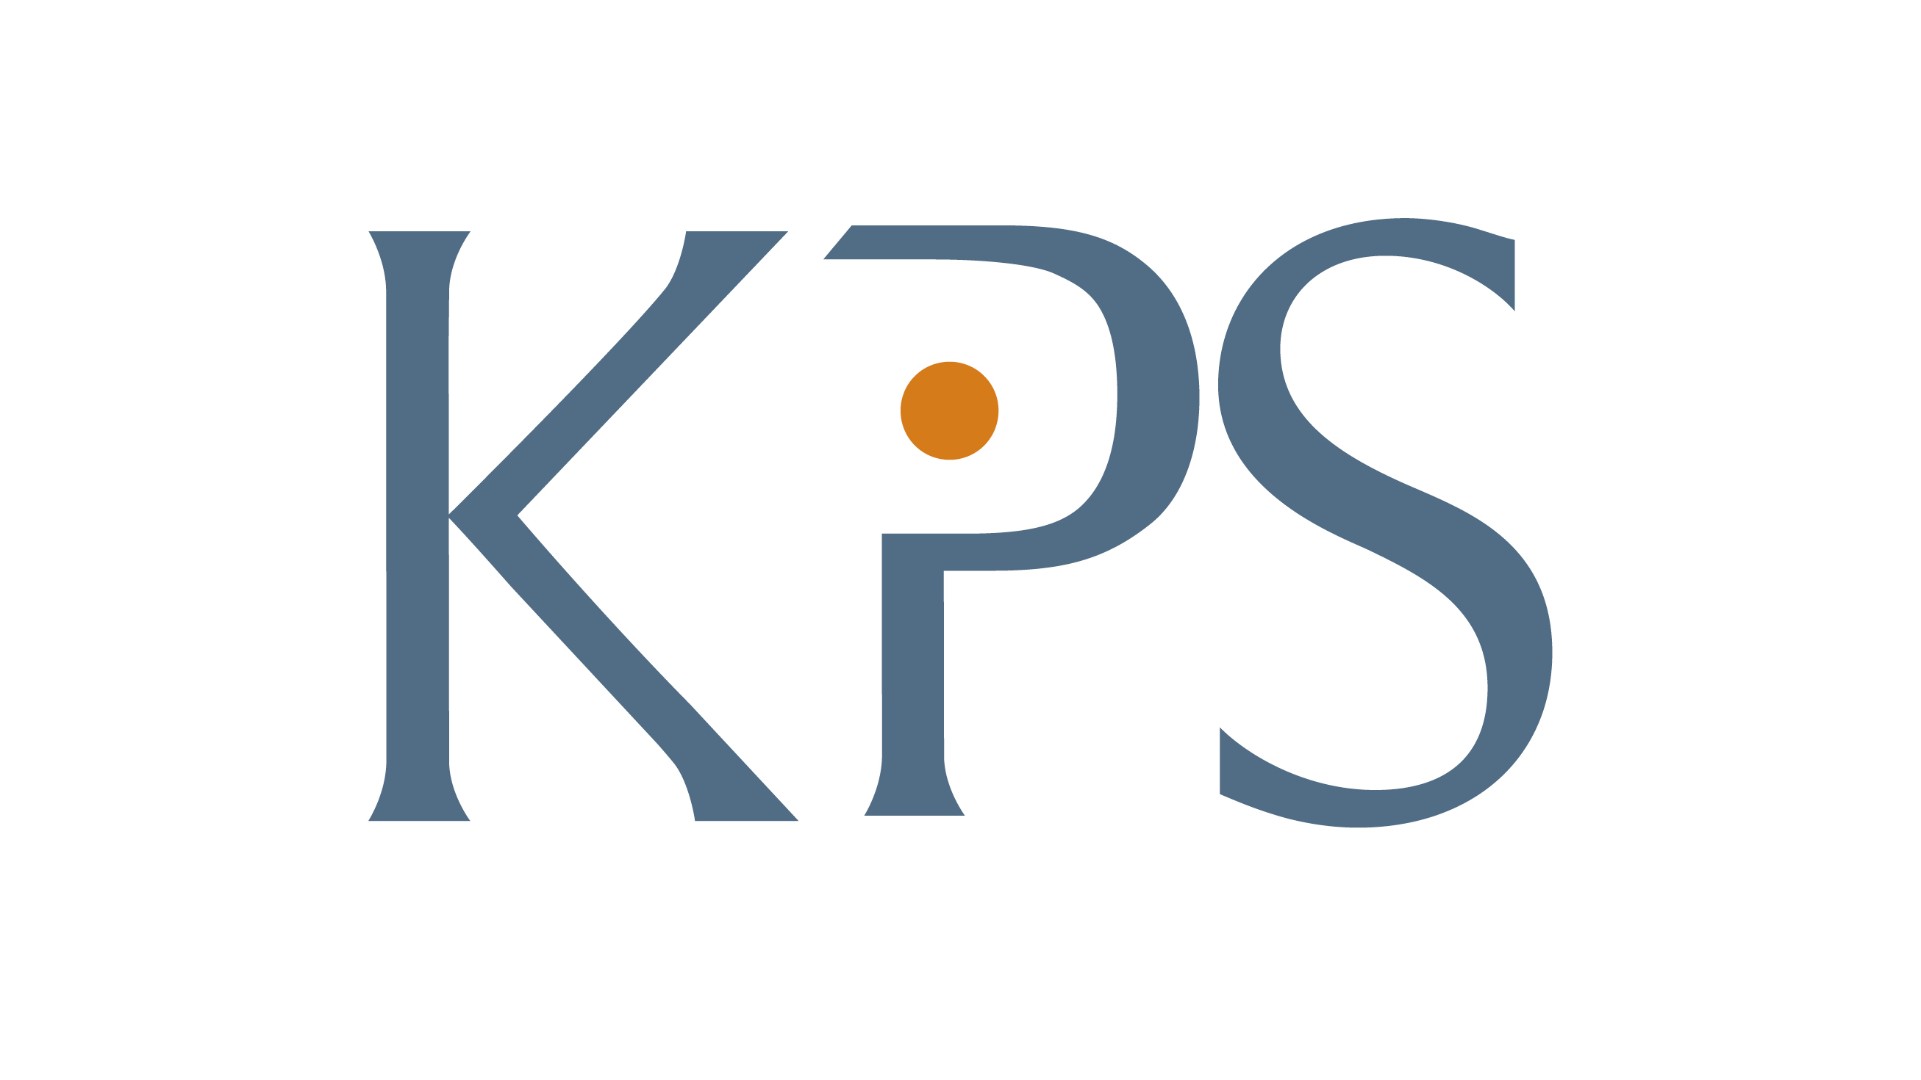 Logo KPS